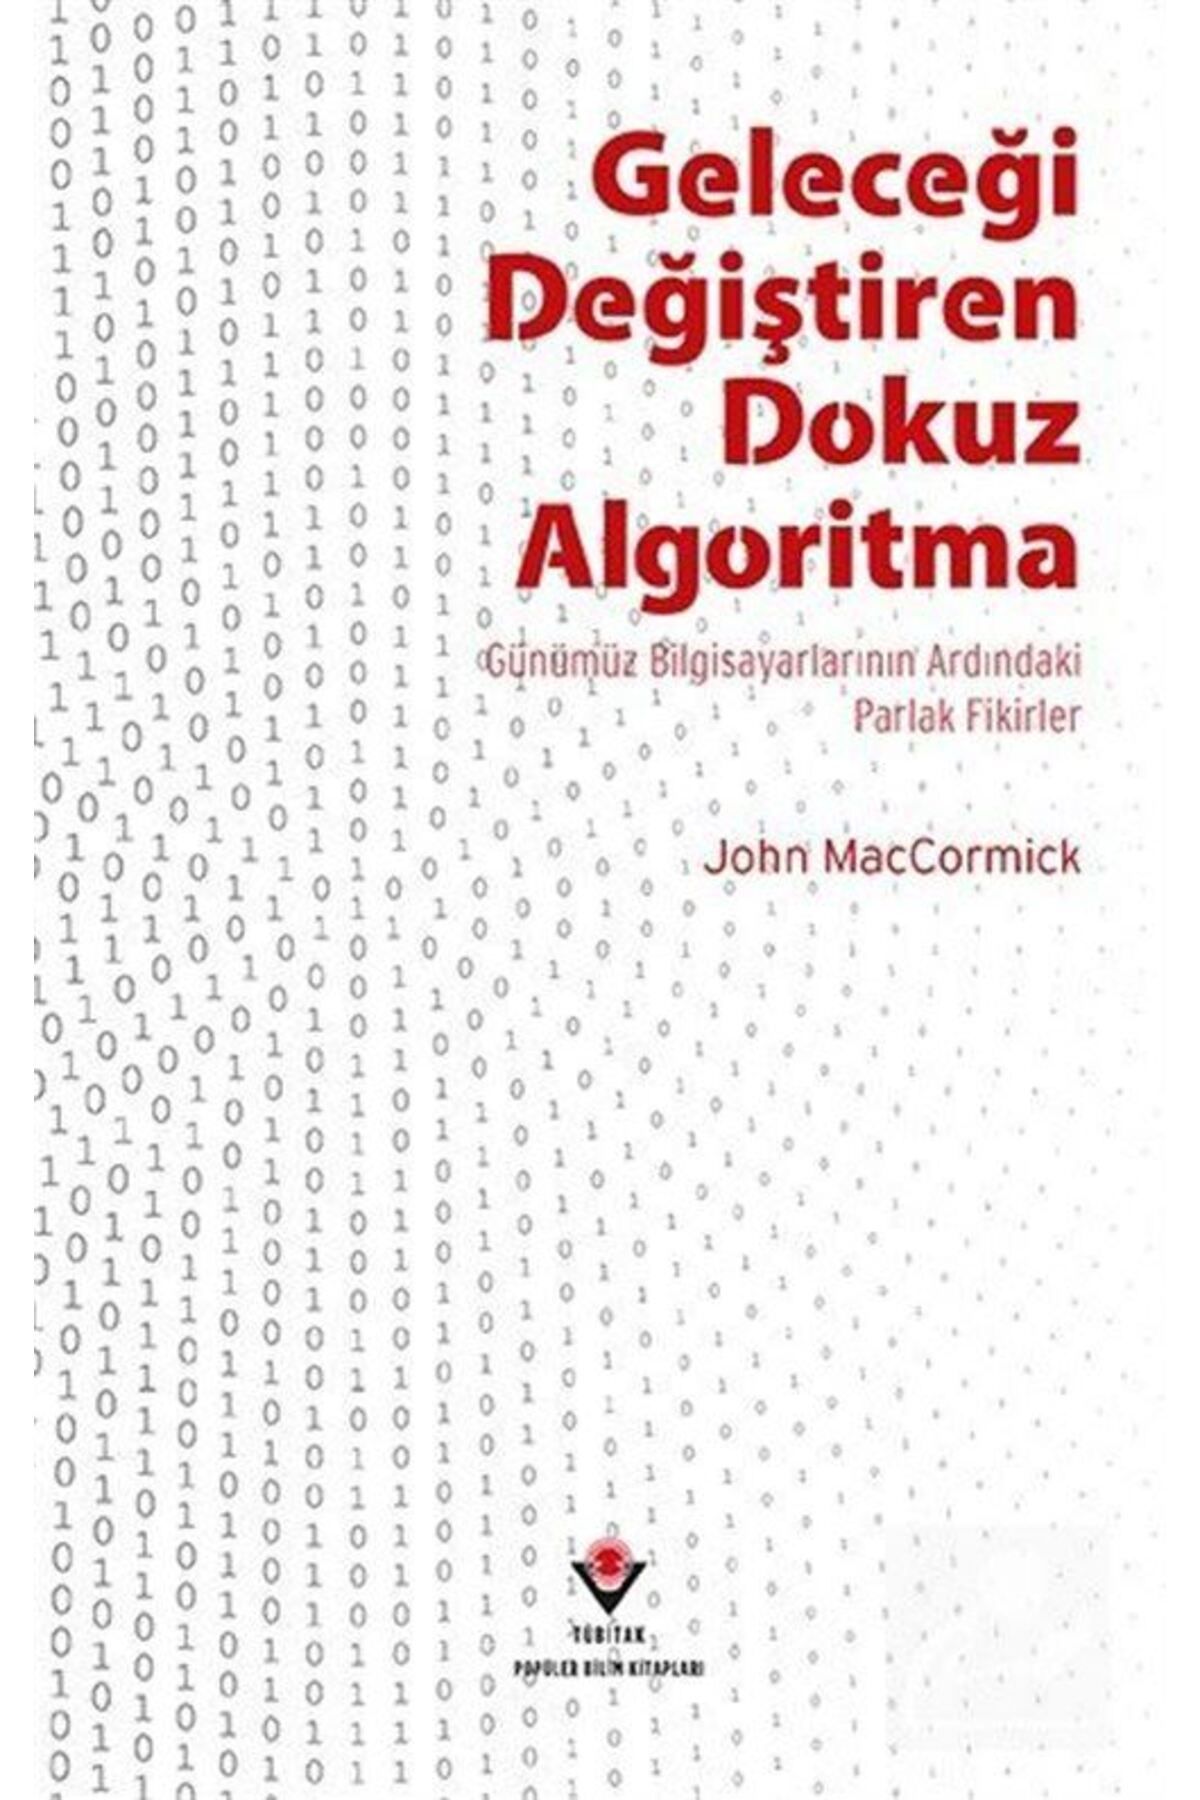 Tübitak Yayınları Geleceği Değiştiren Dokuz Algoritma & Günümüz Bilgisayarlarının Ardındaki Parlak Fikirler